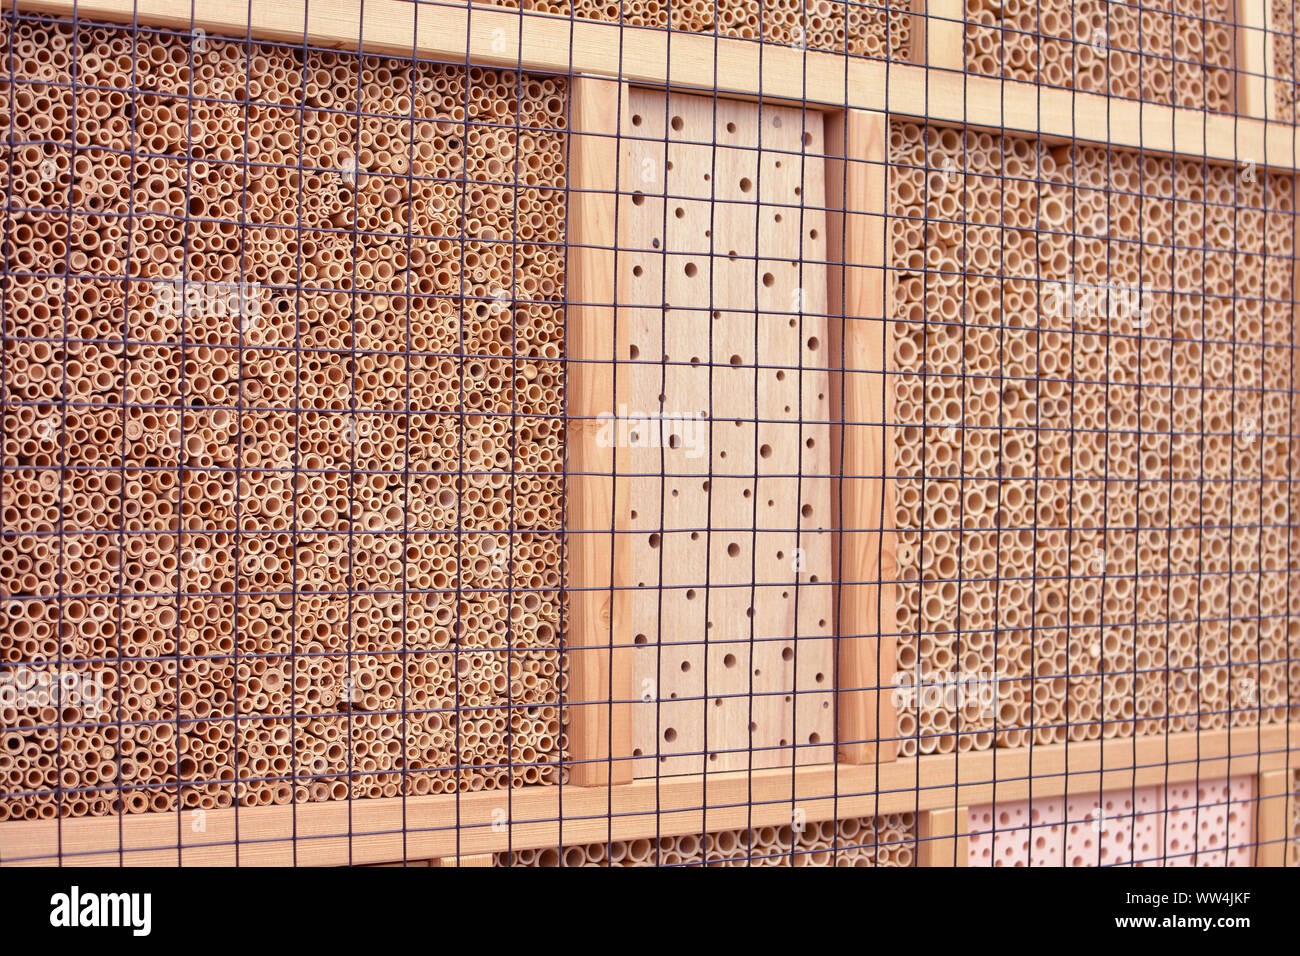 Gros plan d'une maison d'insectes en bois de la structure de l'hôtel créé pour fournir un abri pour les insectes comme les abeilles pour empêcher l'extinction Banque D'Images